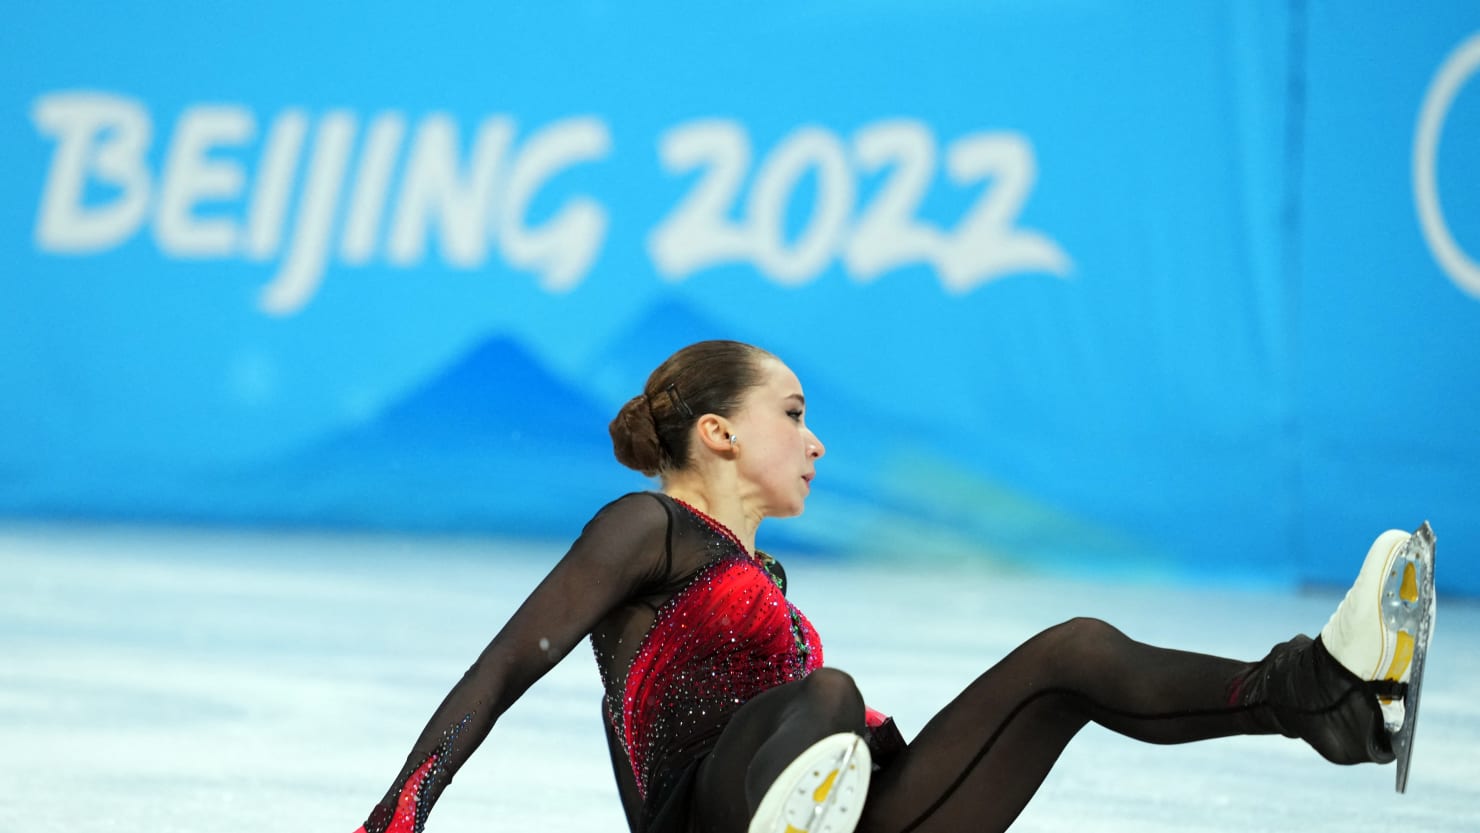 La patinadora Kamila Valieva, que no pasó el control antidopaje, se queda sin medallas en los Juegos Olímpicos de Pekín